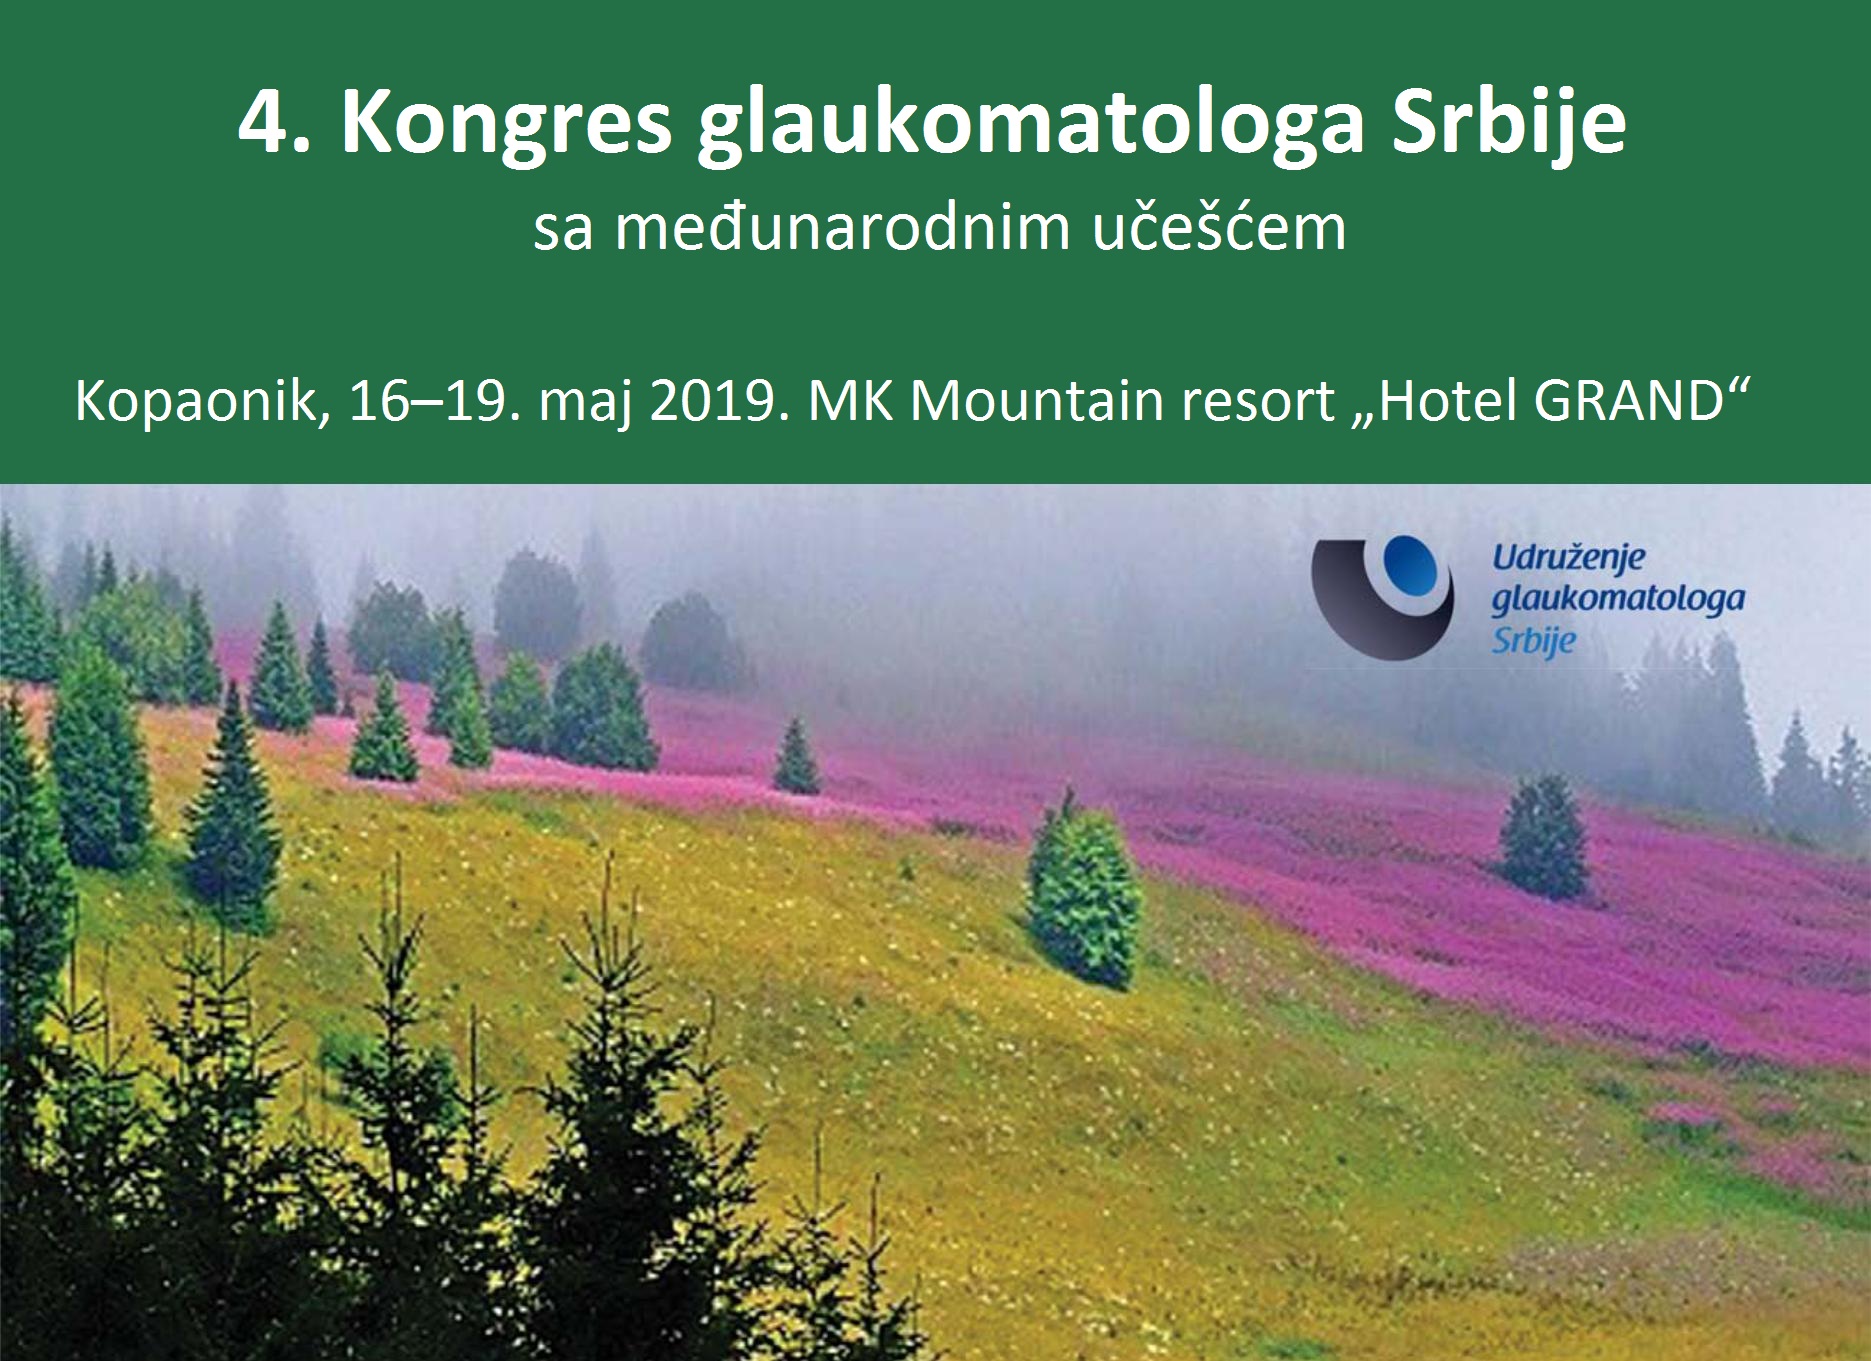 4. Kongres glaukomatologa Srbije sa međunarodnim učešćem, MAY 2019